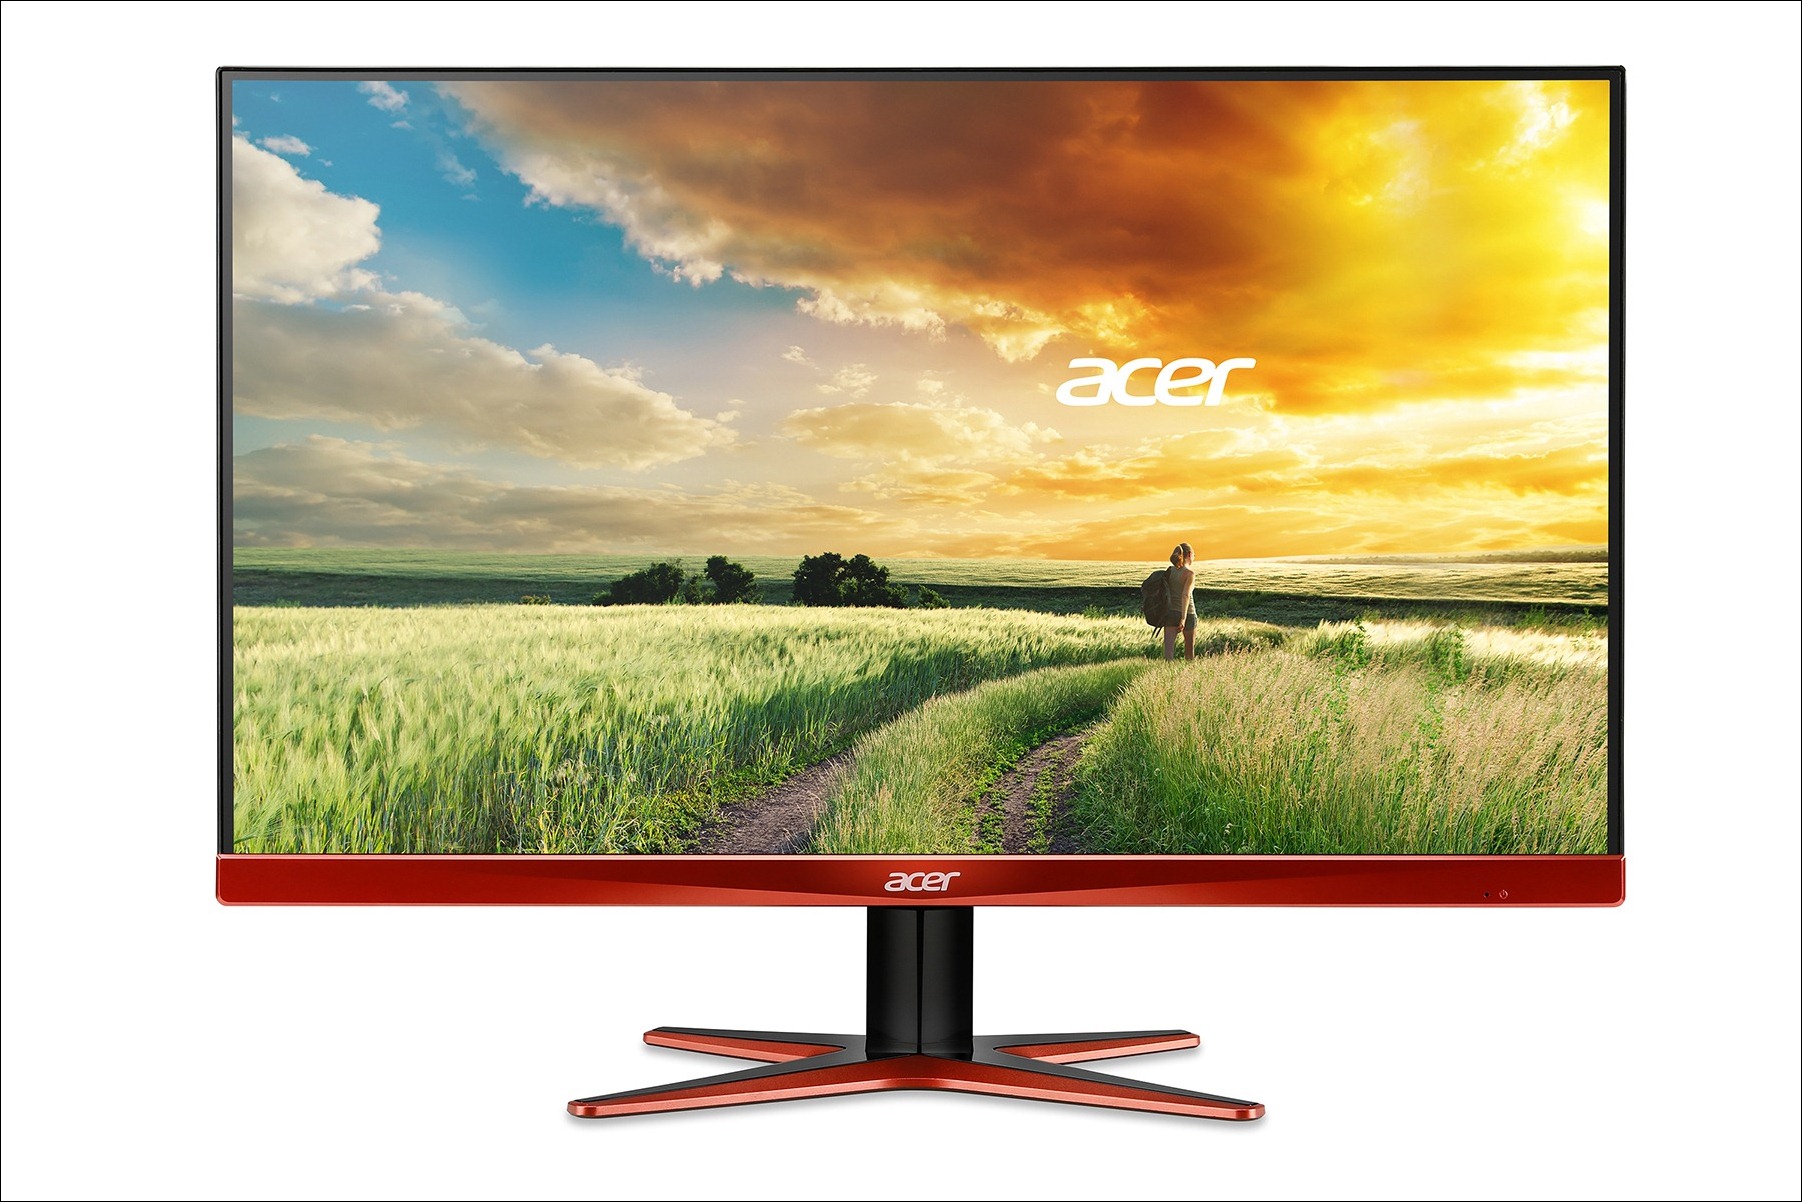 Monitor Acer XG270HU equipado con tecnología Freesync de AMD